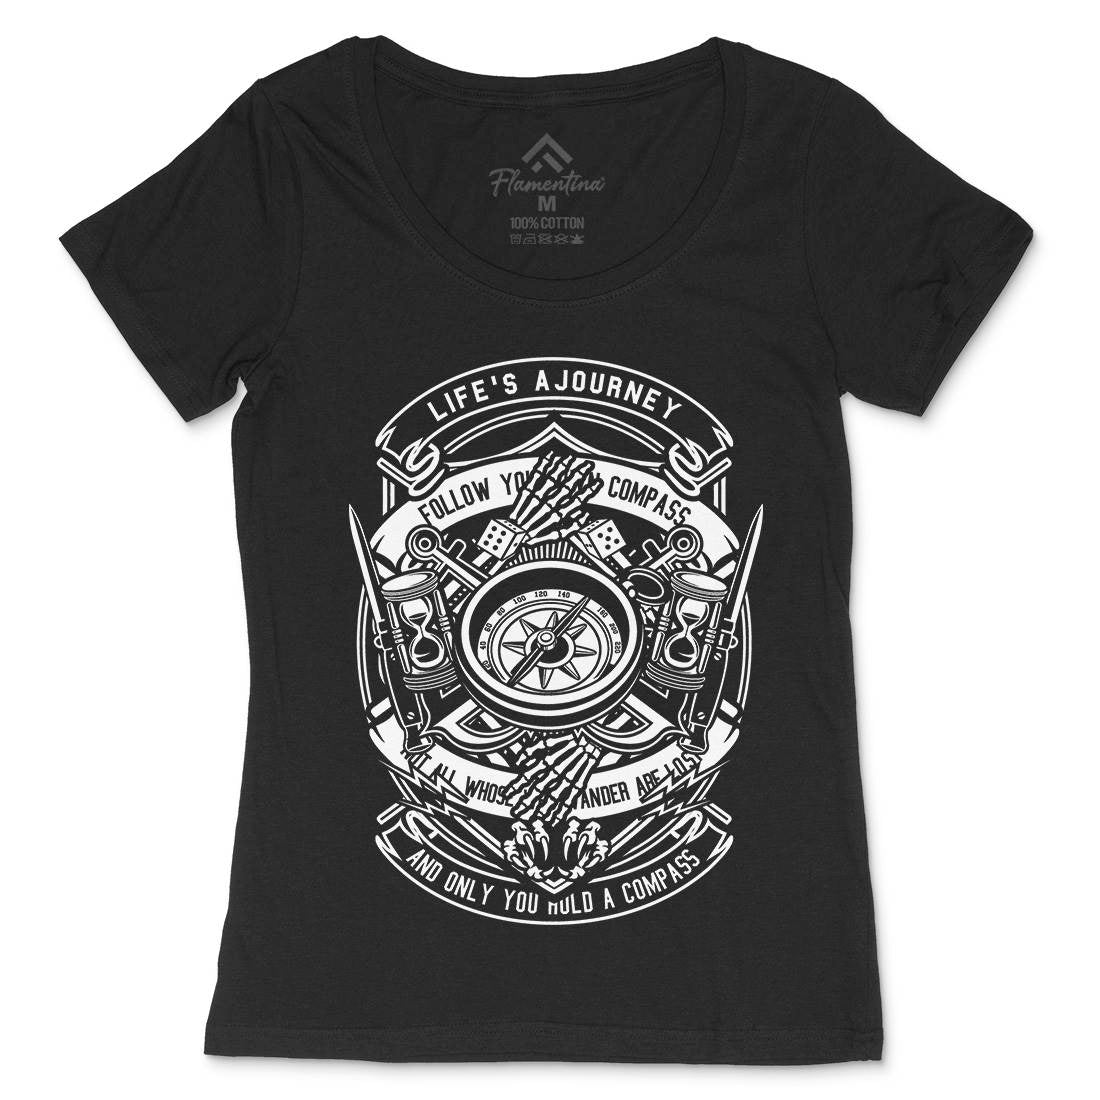 Compass Womens Scoop Neck T-Shirt Navy B518